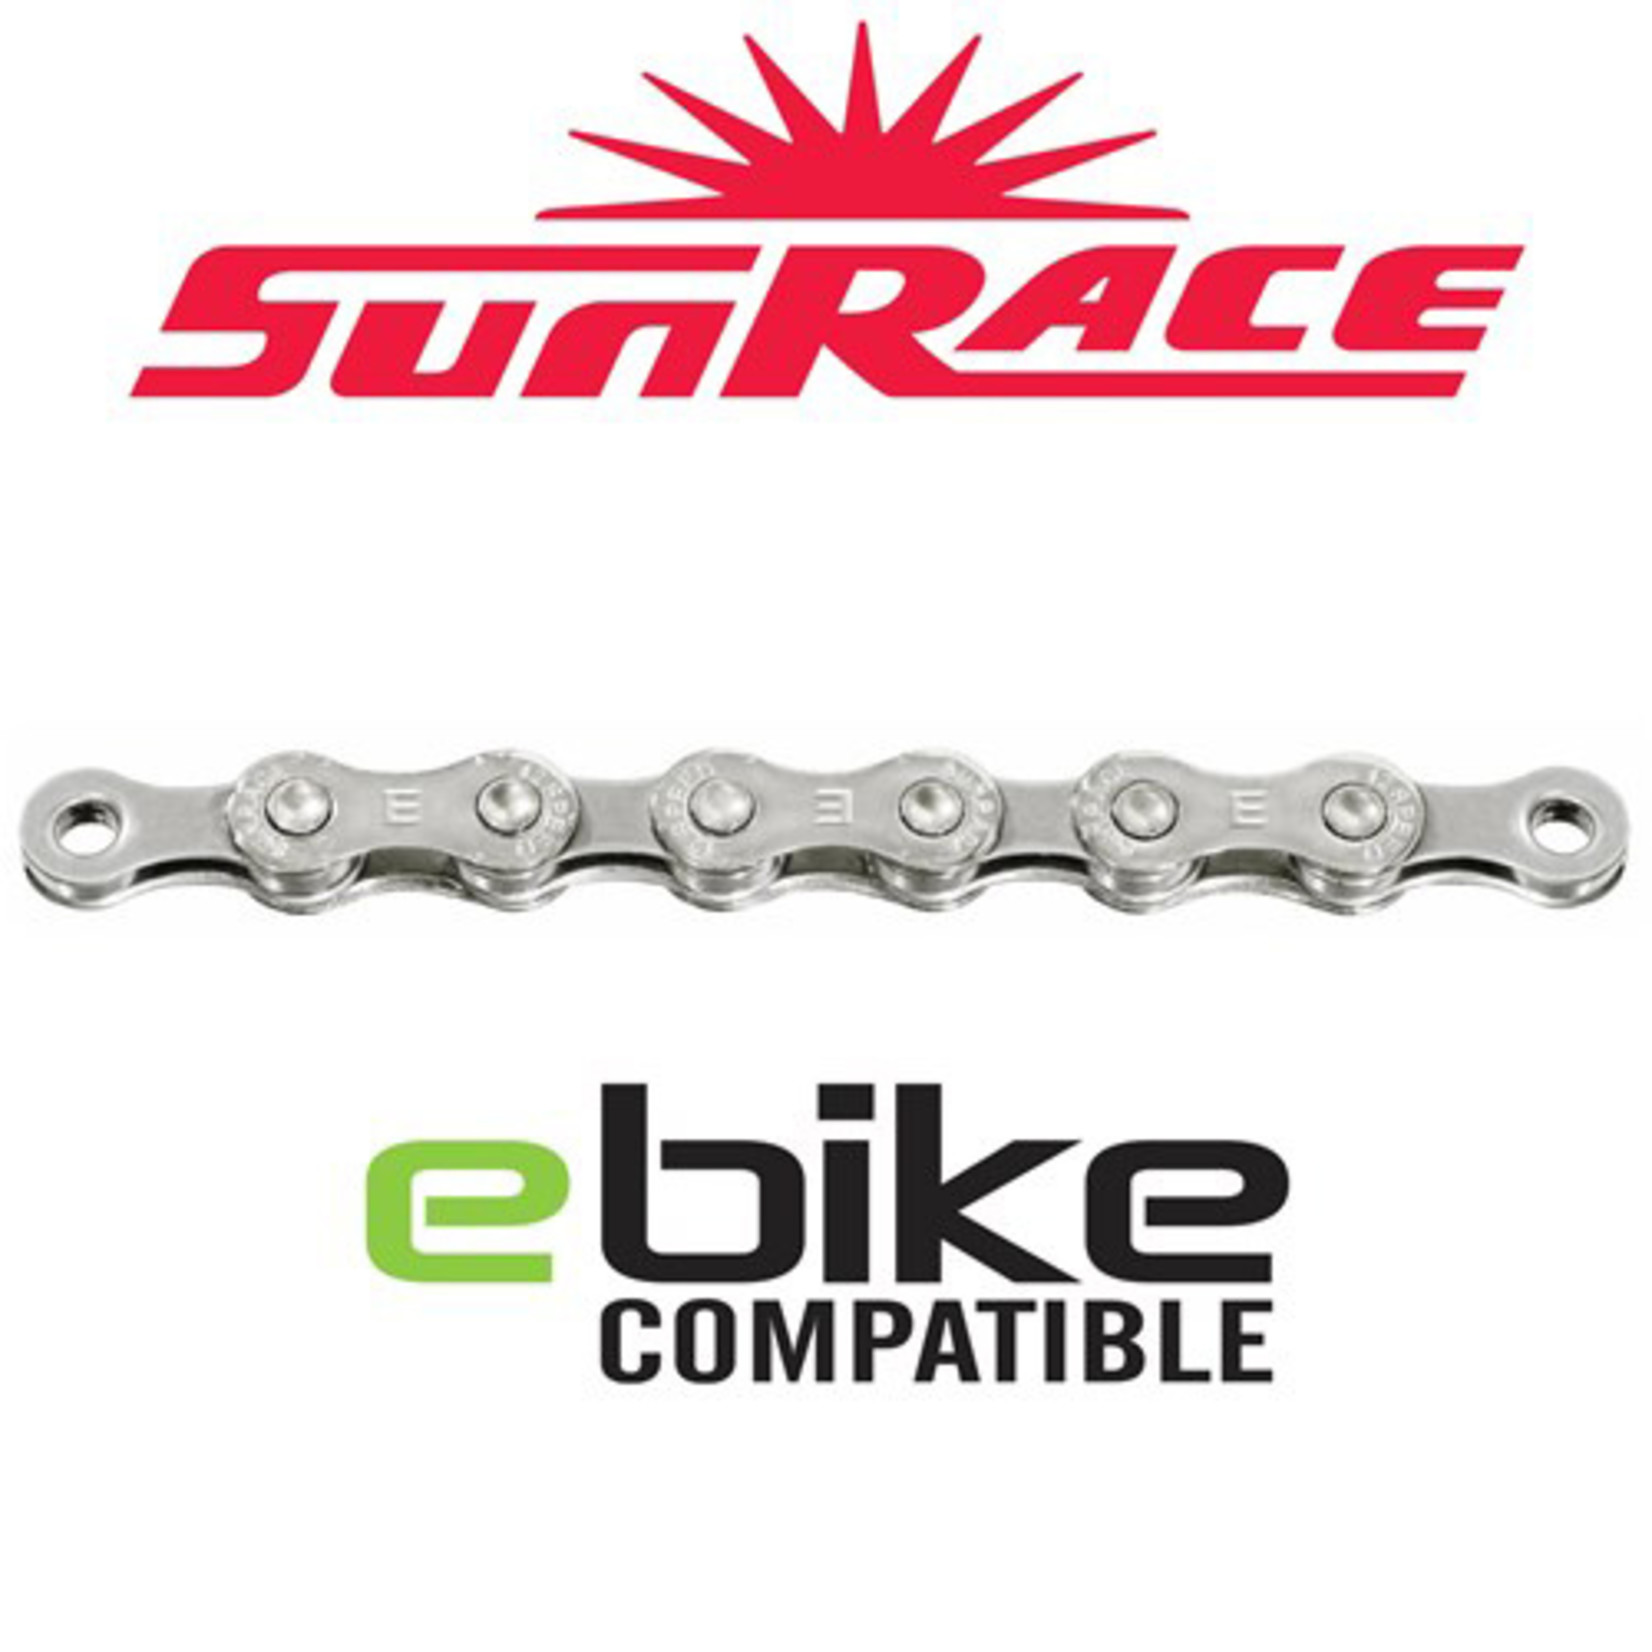 Sunrace Sunrace Bike Chain - E-Bike Compatible 12 Speed - 110 Links - Chrome